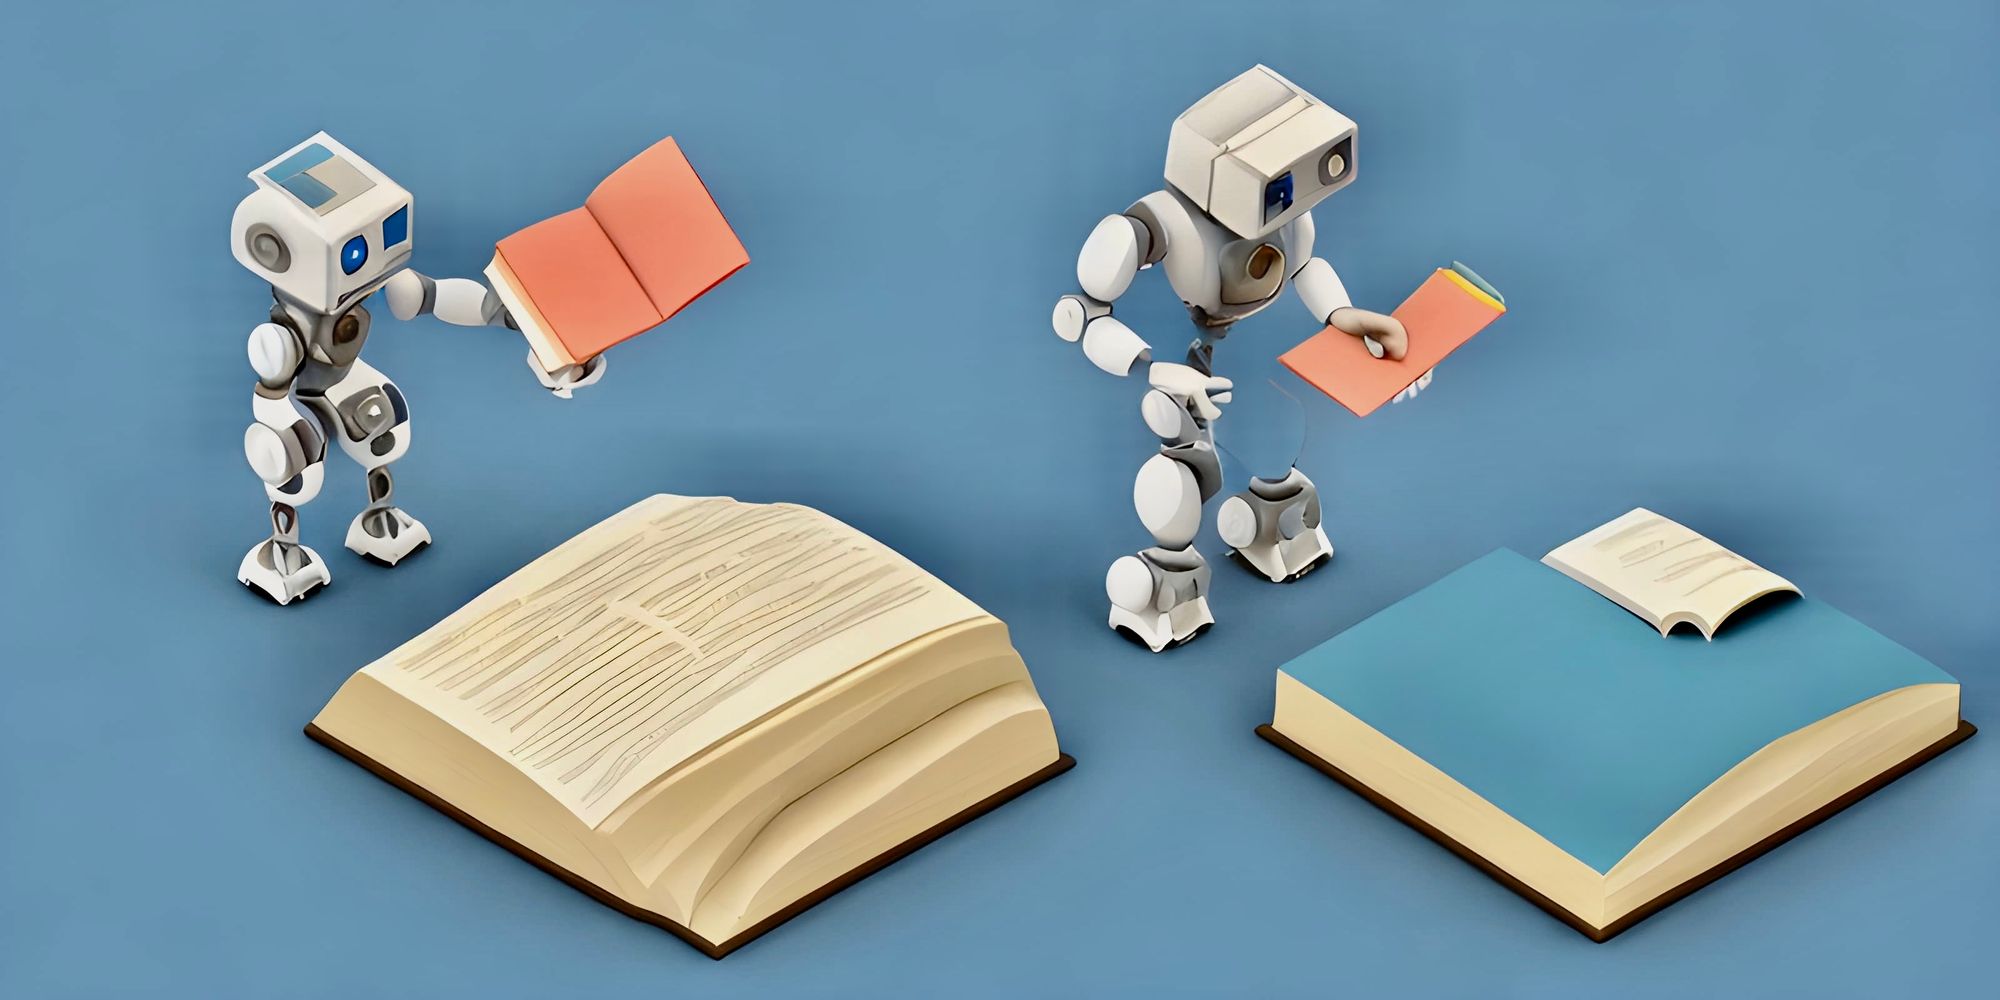 Robots reading books - Data ingestion for LLMs